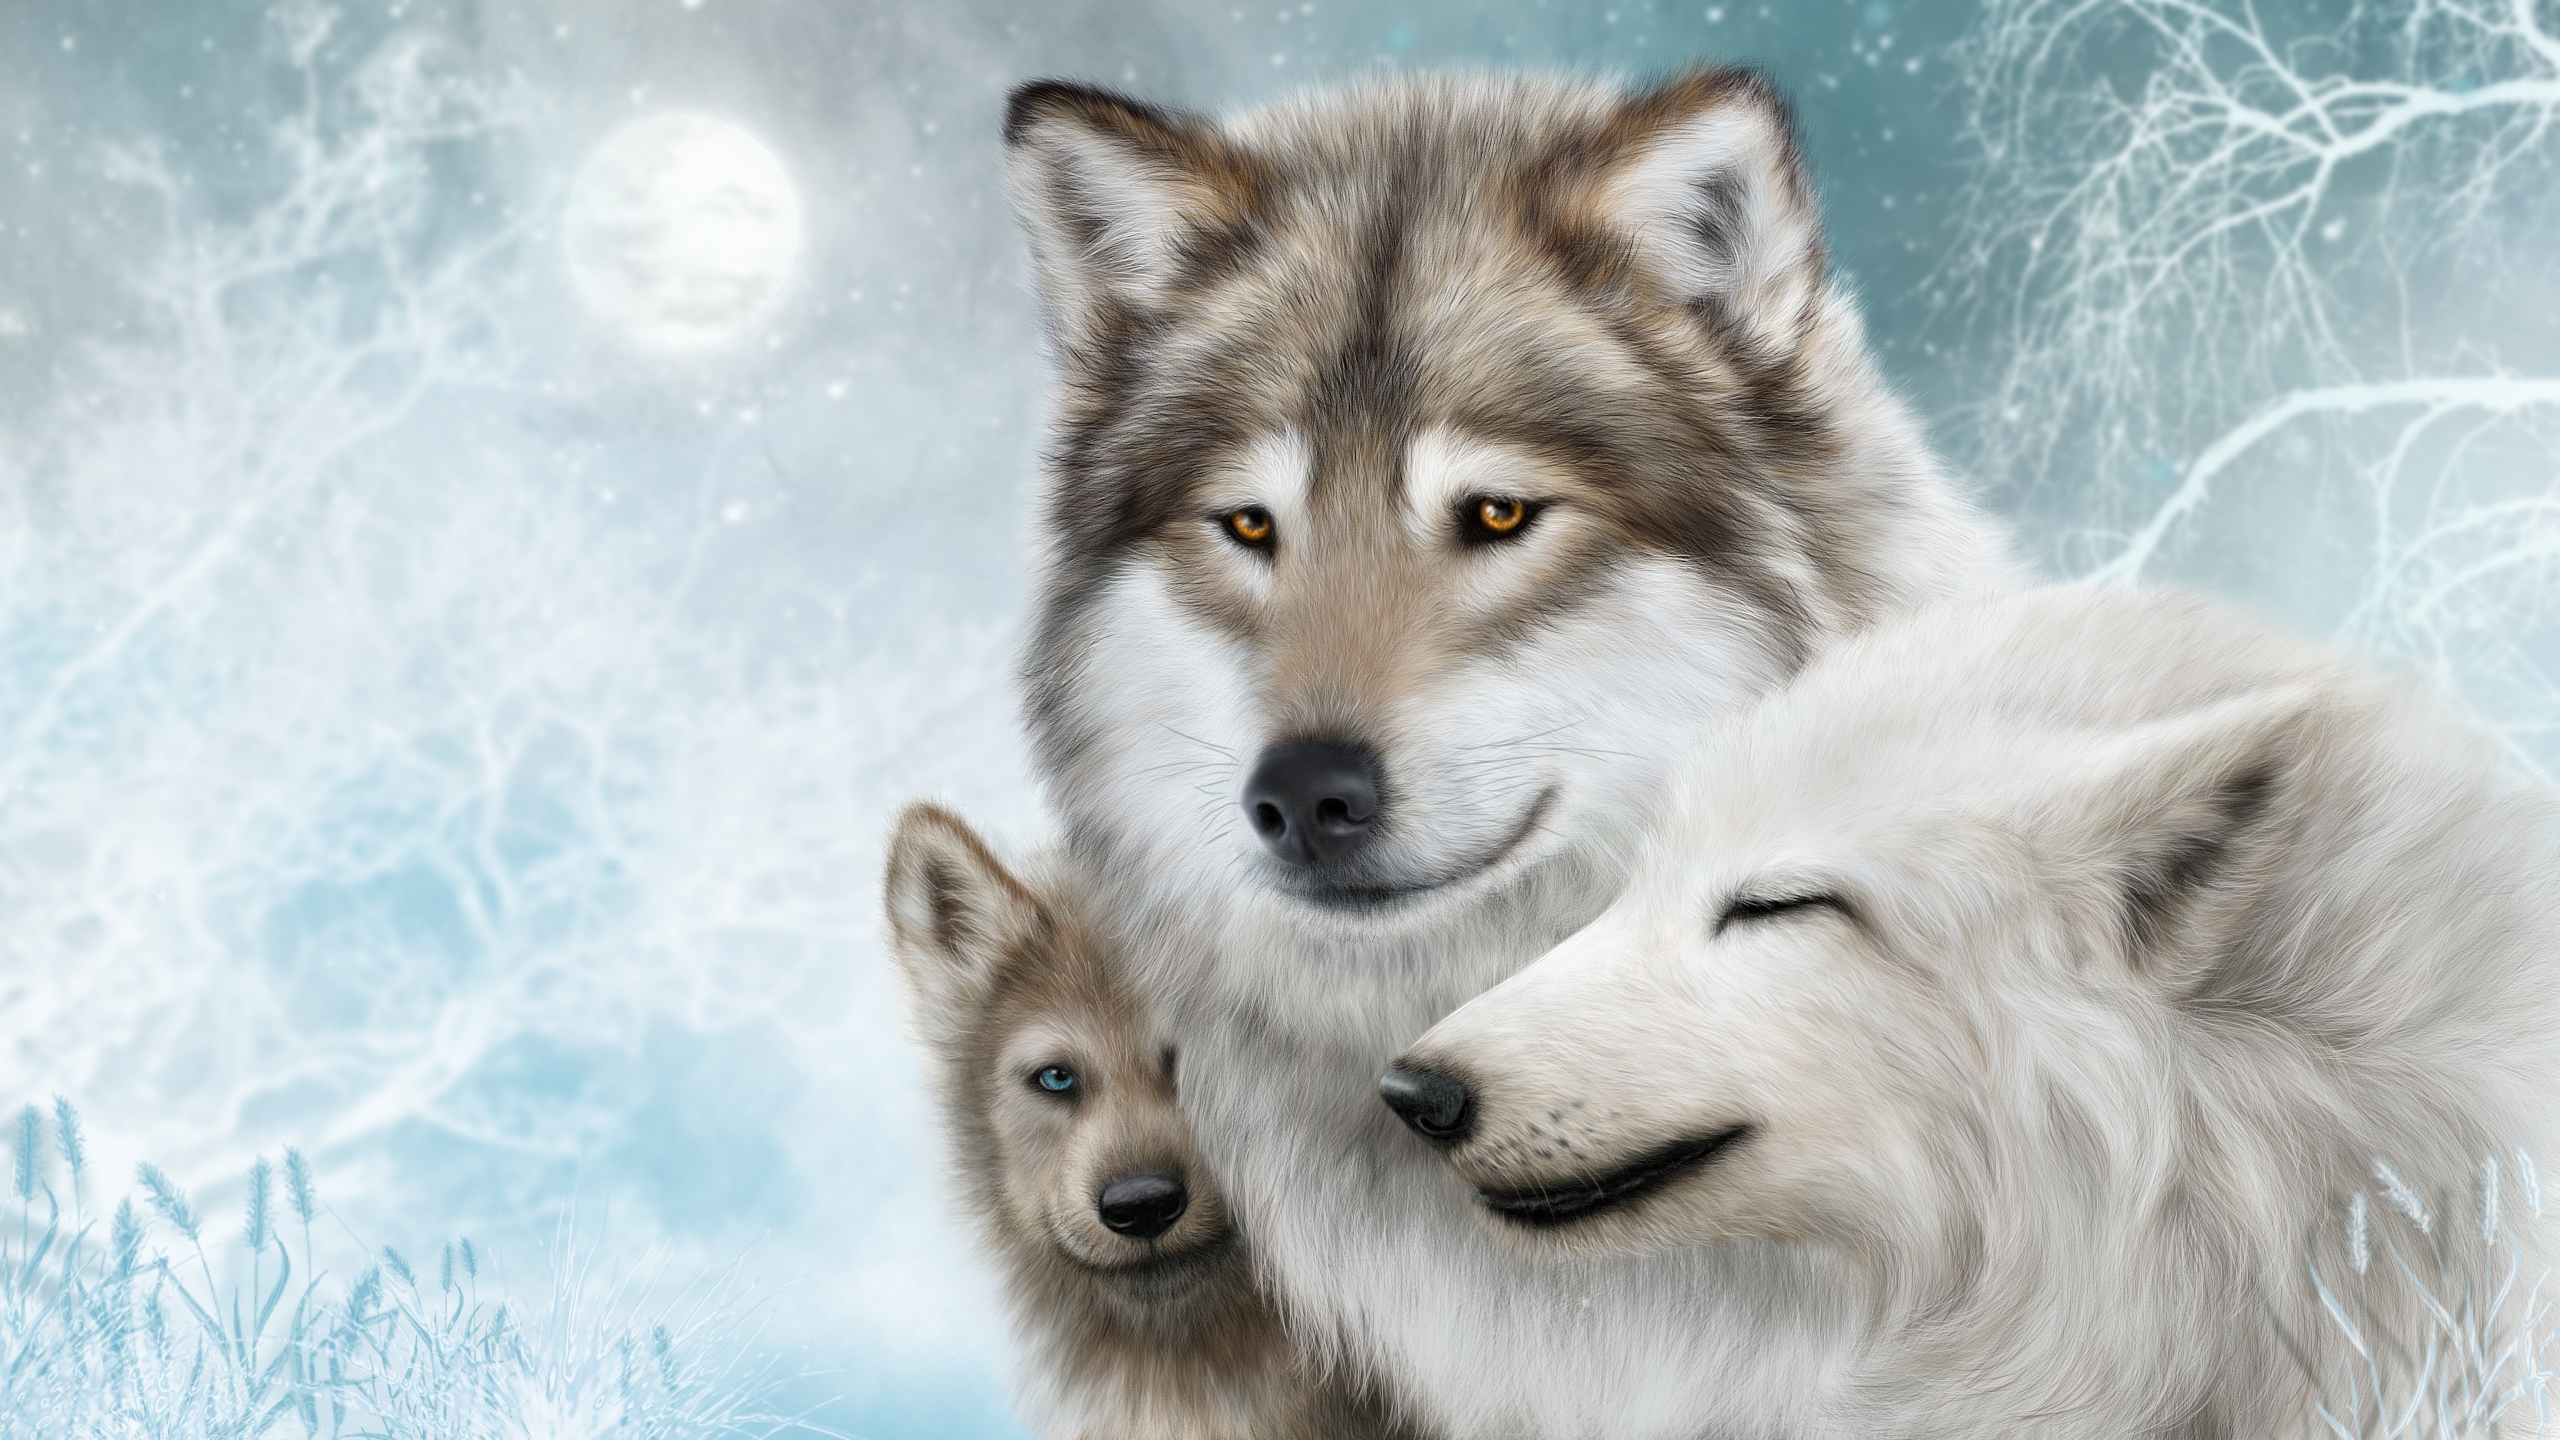 Descarga gratuita de fondo de pantalla para móvil de Animales, Invierno, Luna, Nieve, Árbol, Pintura, Lobo, Wolves.